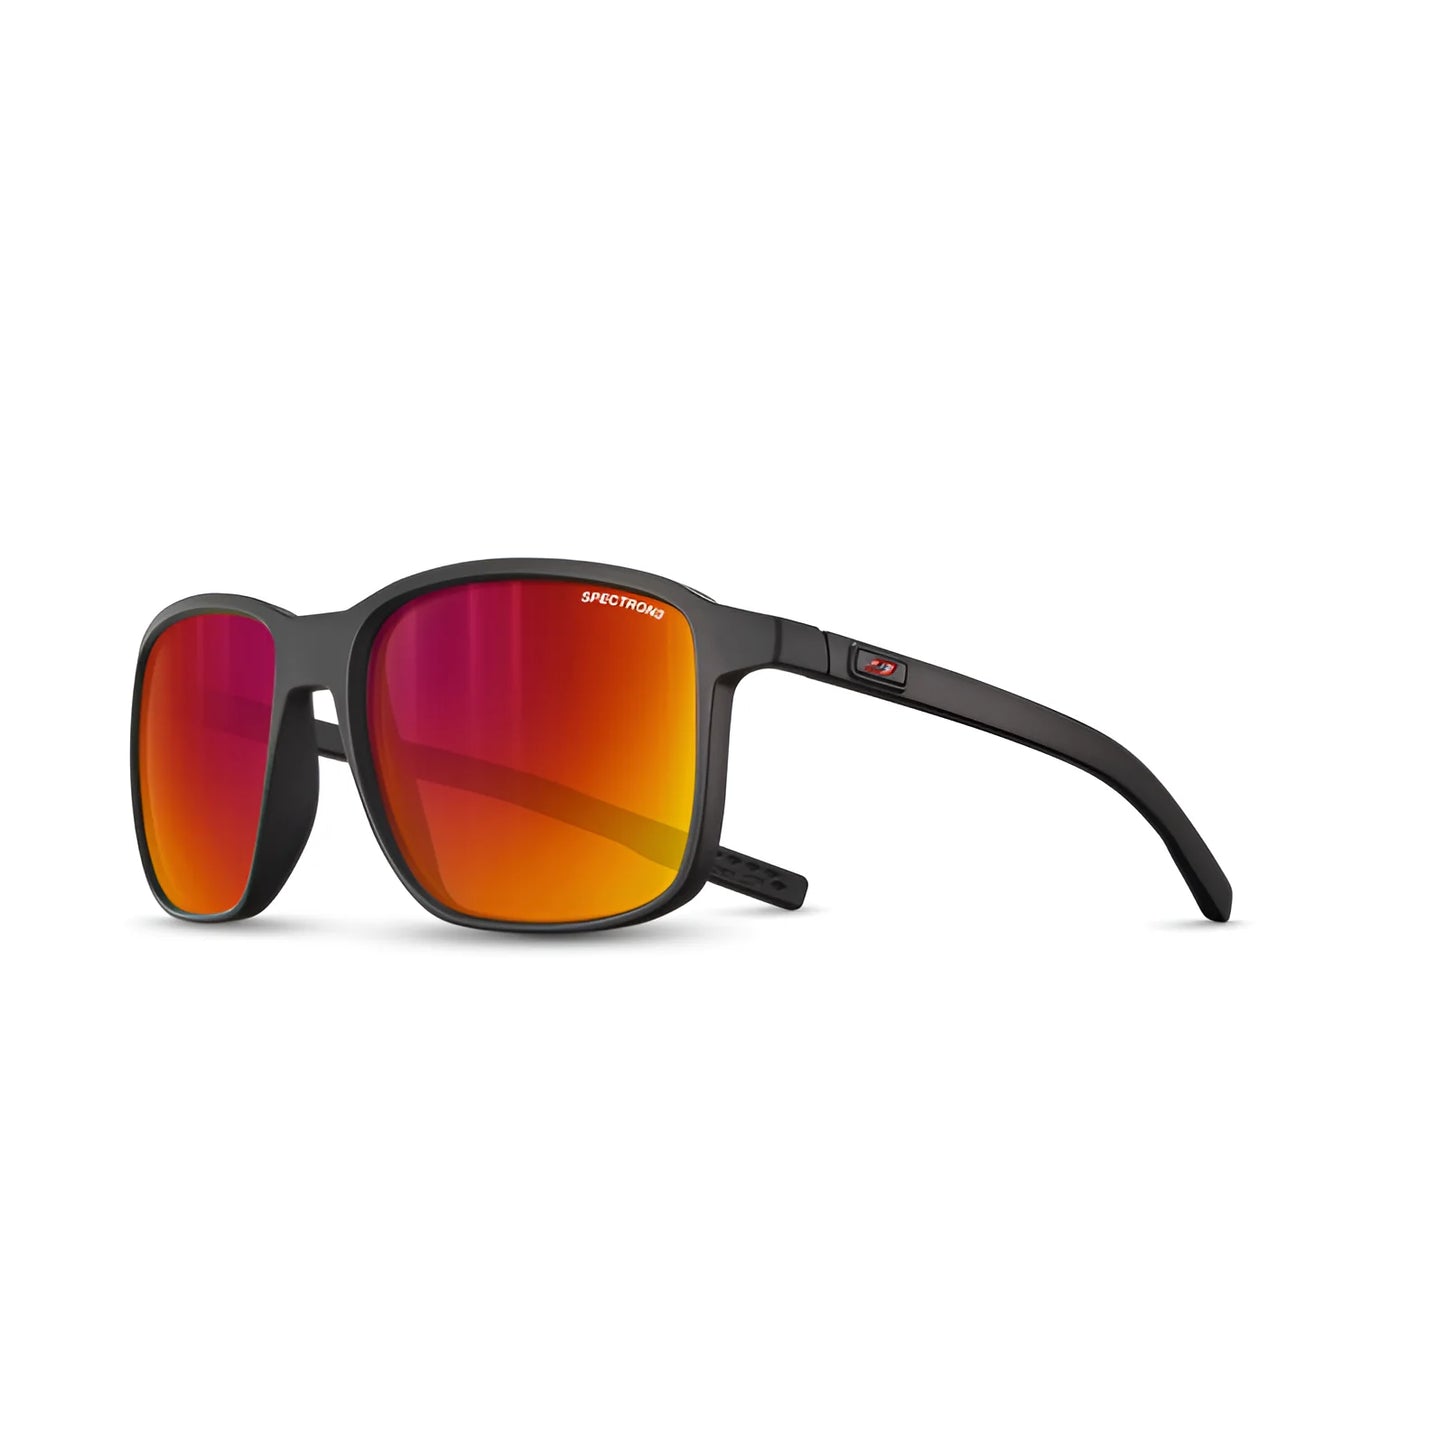 Julbo Creek Sunglasses Black / Red / Spectron 3 (VLT 13%)